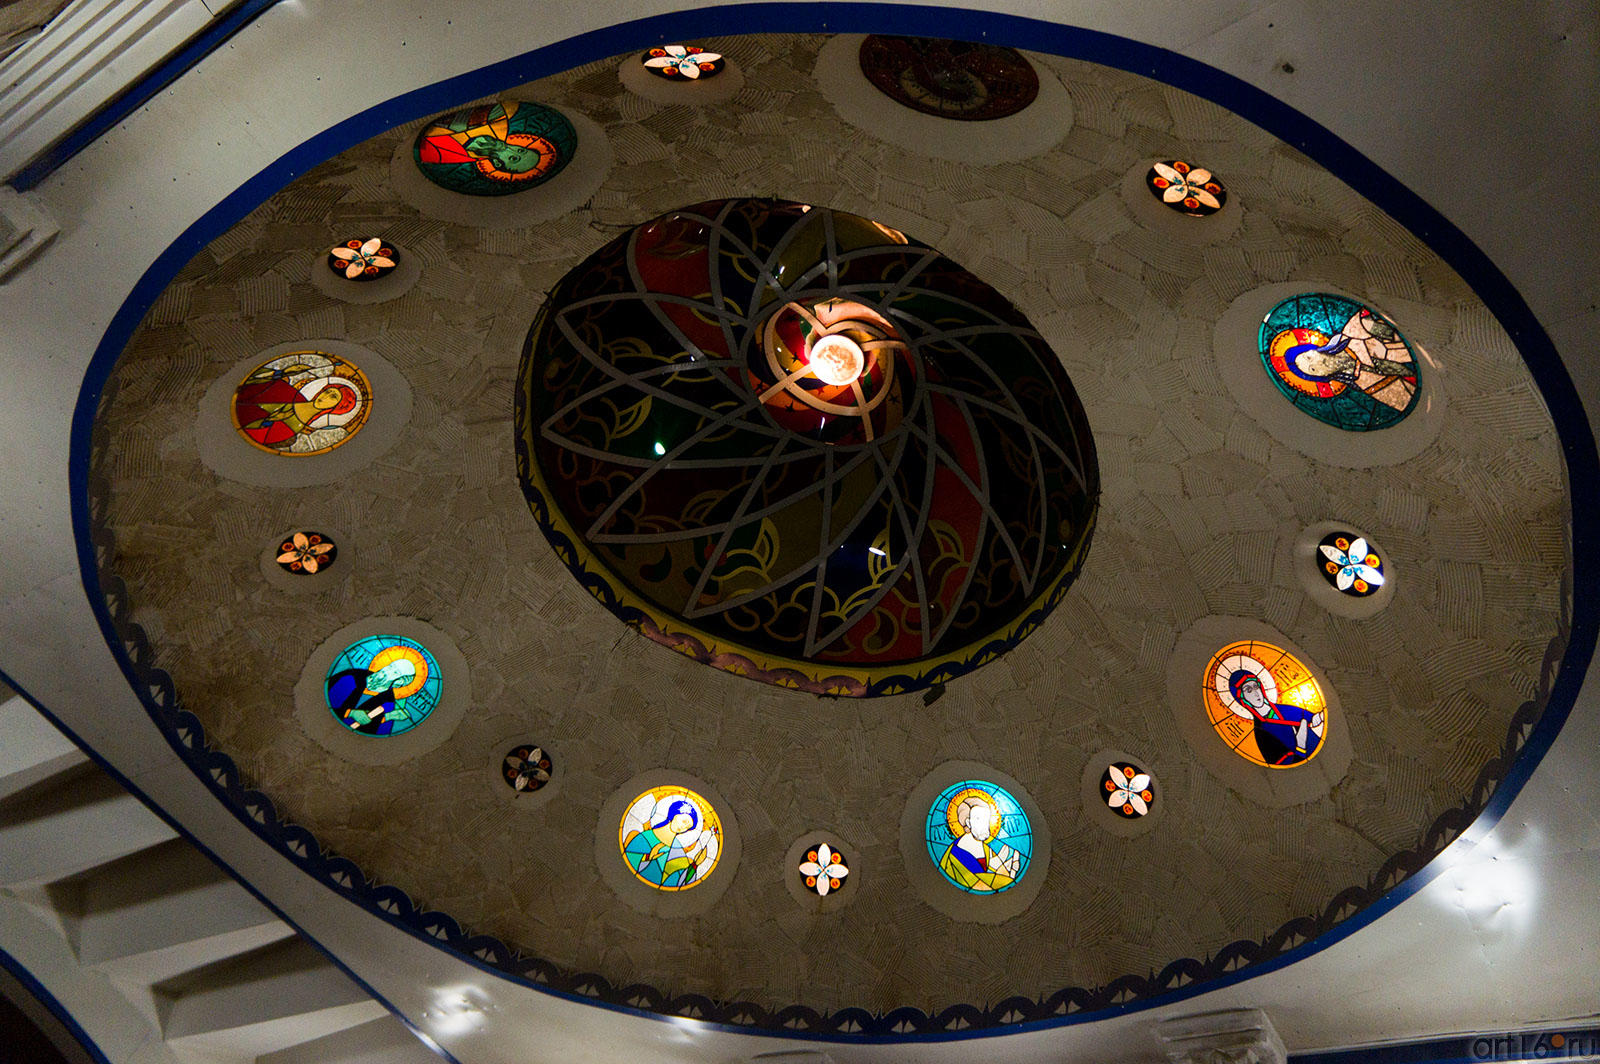 Плафон в Католическом зале Вселенского храма::Вселенский храм. Международный культурный центр духовного единения